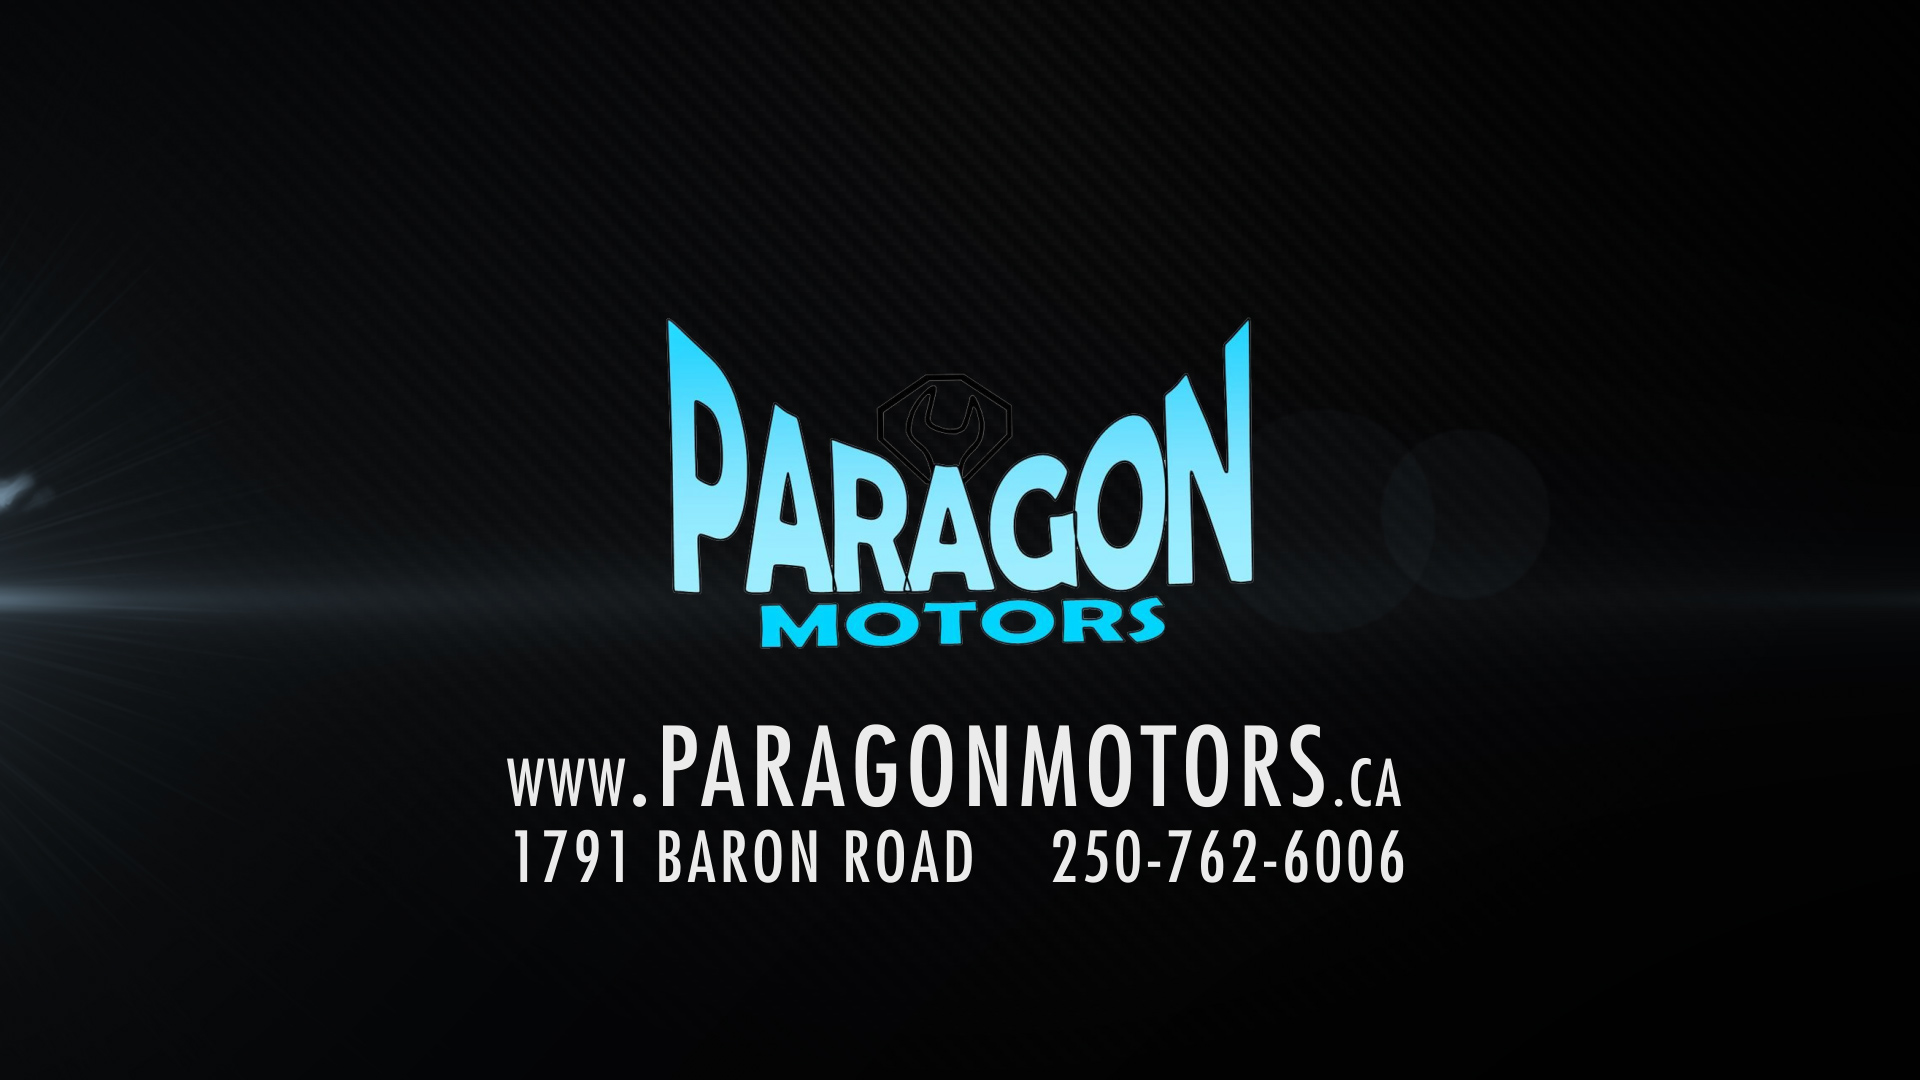 Paragon Motors